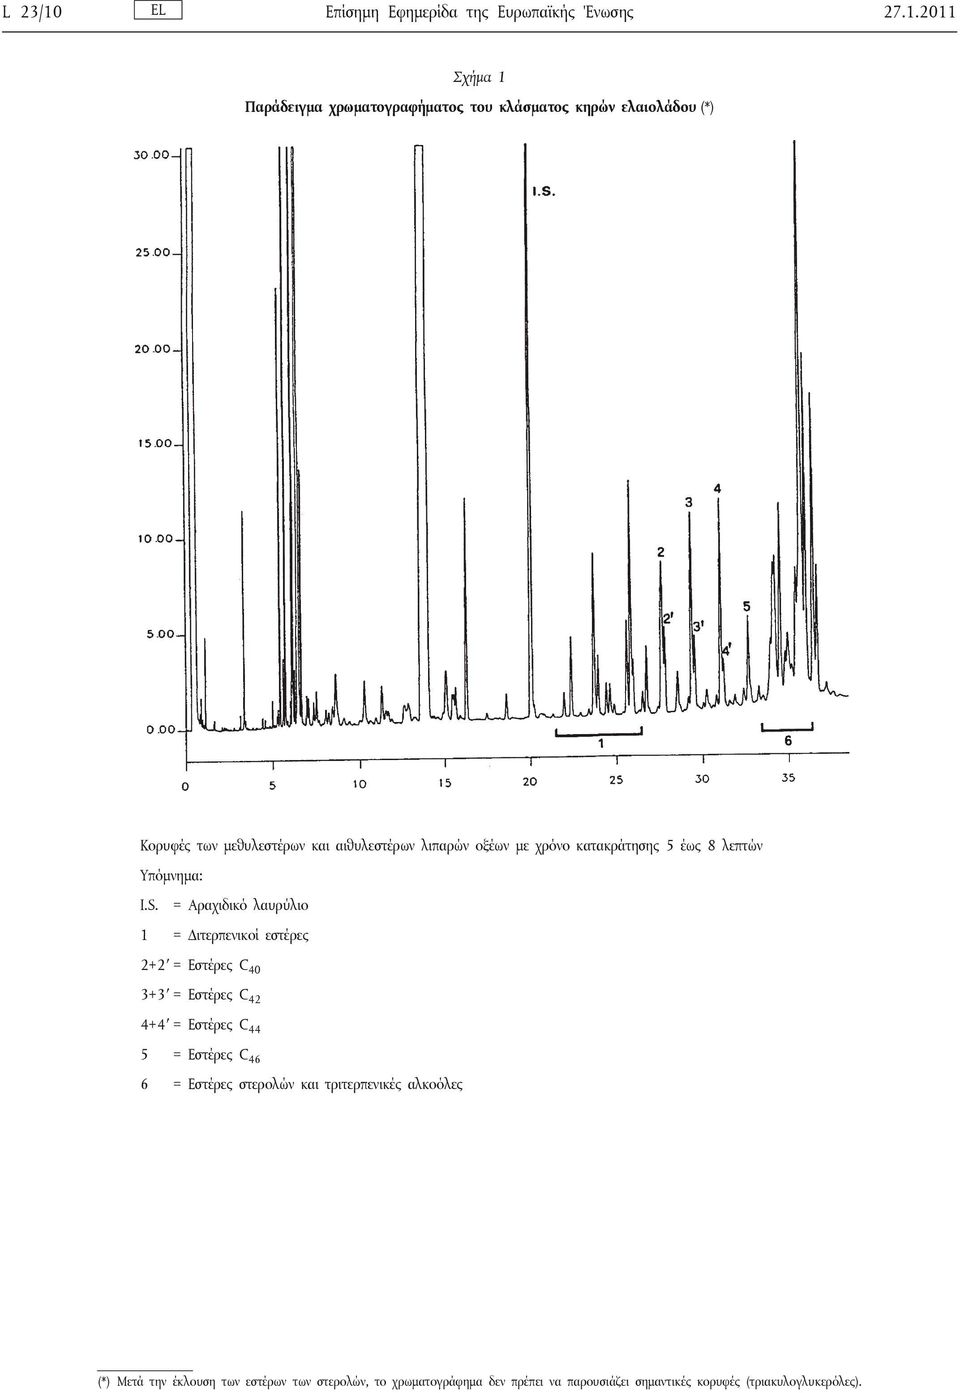 2011 Σχήμα 1 Παράδειγμα χρωματογραφήματος του κλάσματος κηρών ελαιολάδου (*) Κορυφές των μεθυλεστέρων και αιθυλεστέρων λιπαρών οξέων